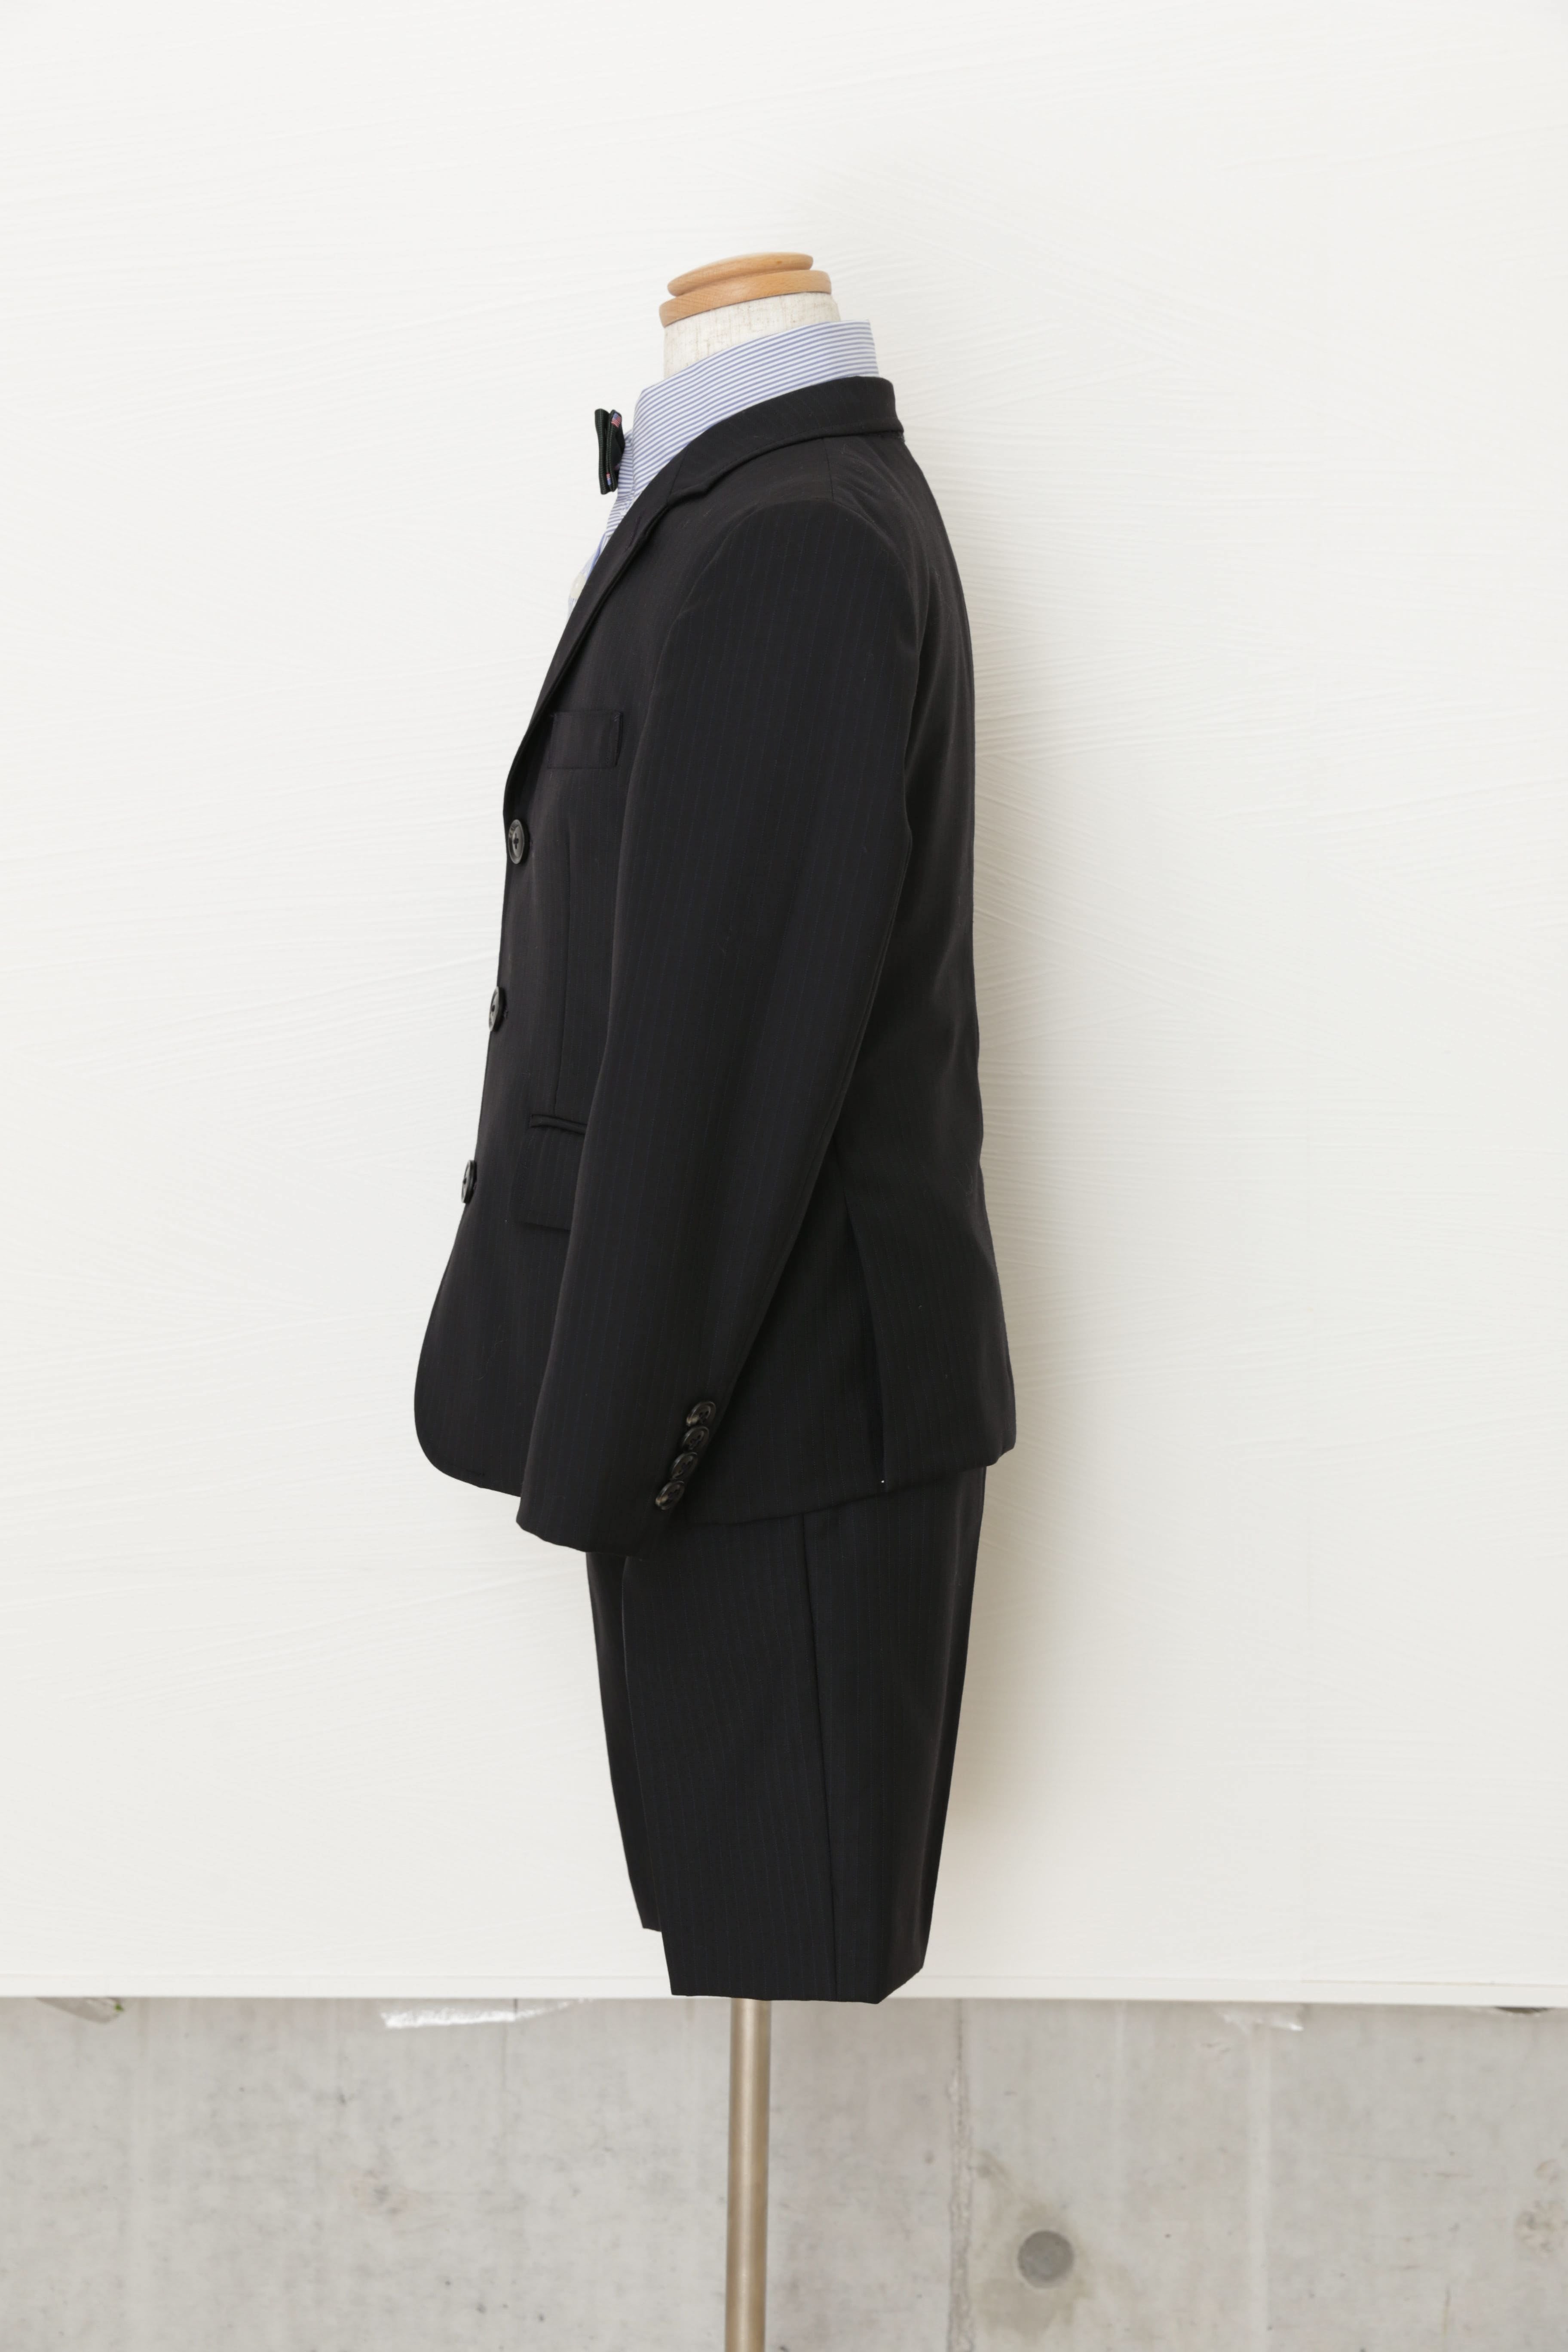 ドレス/フォーマルJプレス 黒 スーツ 4点セット 130